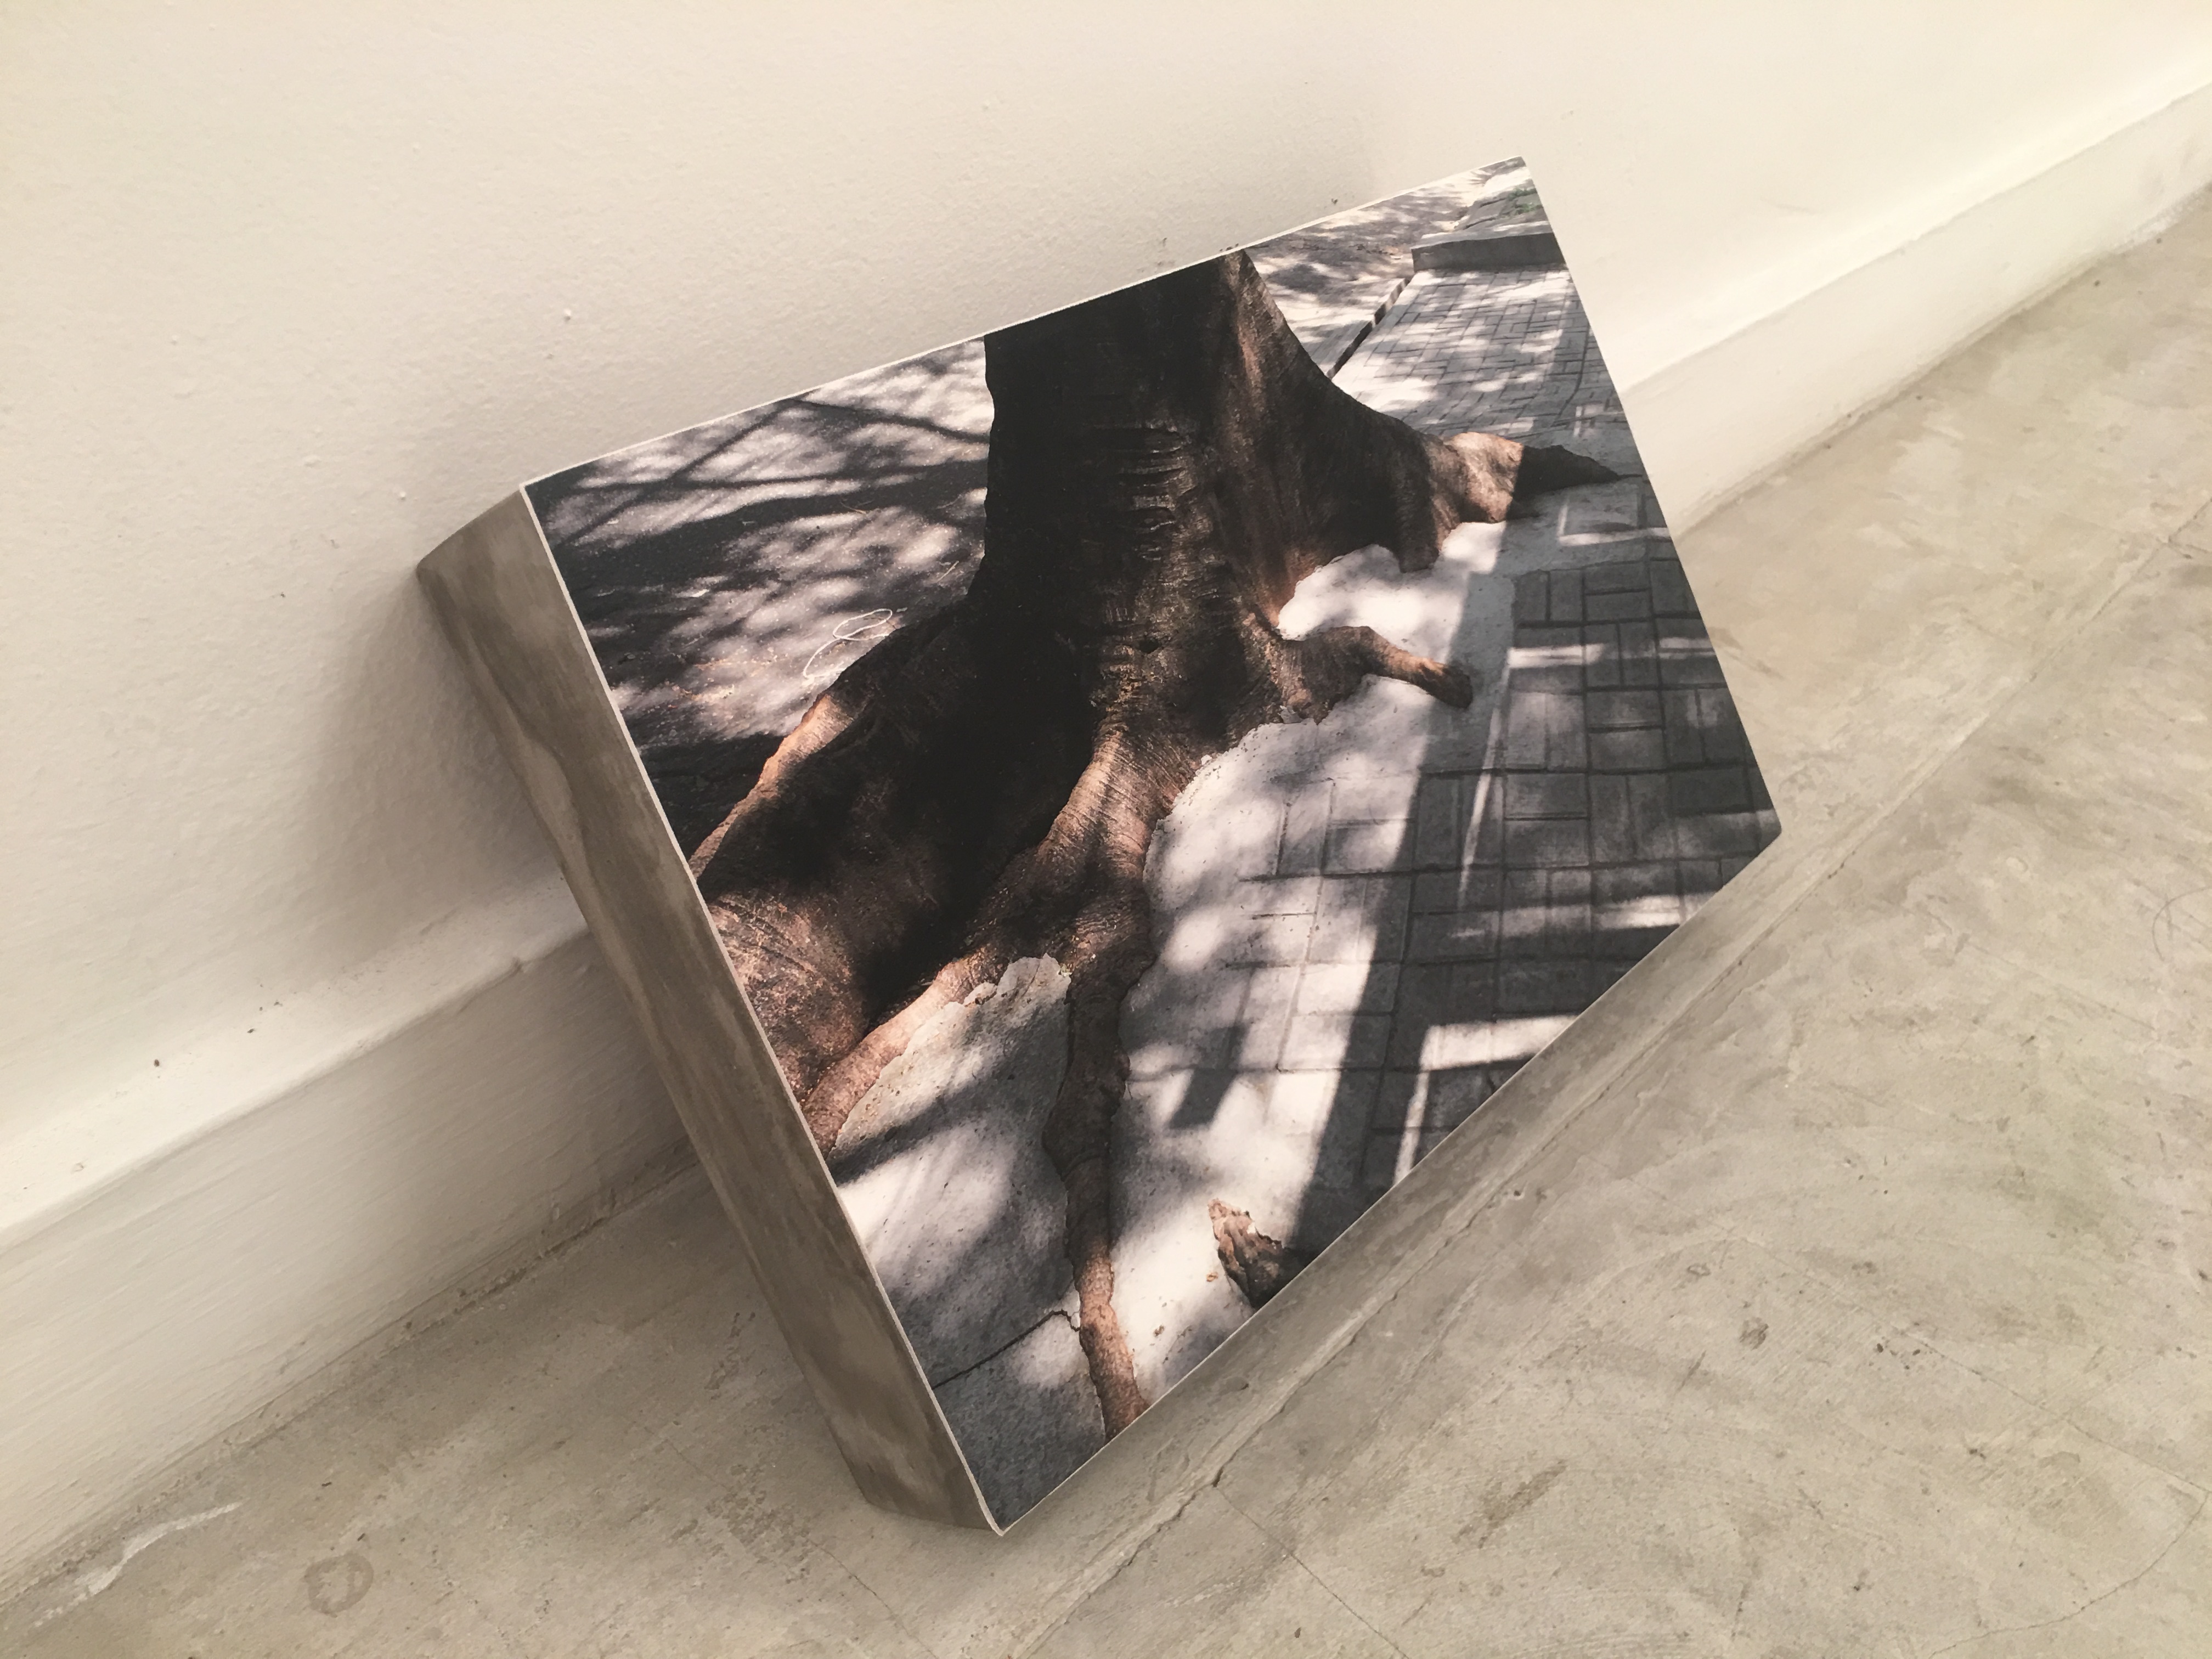 Patricia Gouvêa, Sobrevida 8, Foto-objeto, 20 x 30 x 5 cm, 2018, Edição 1 de 3.